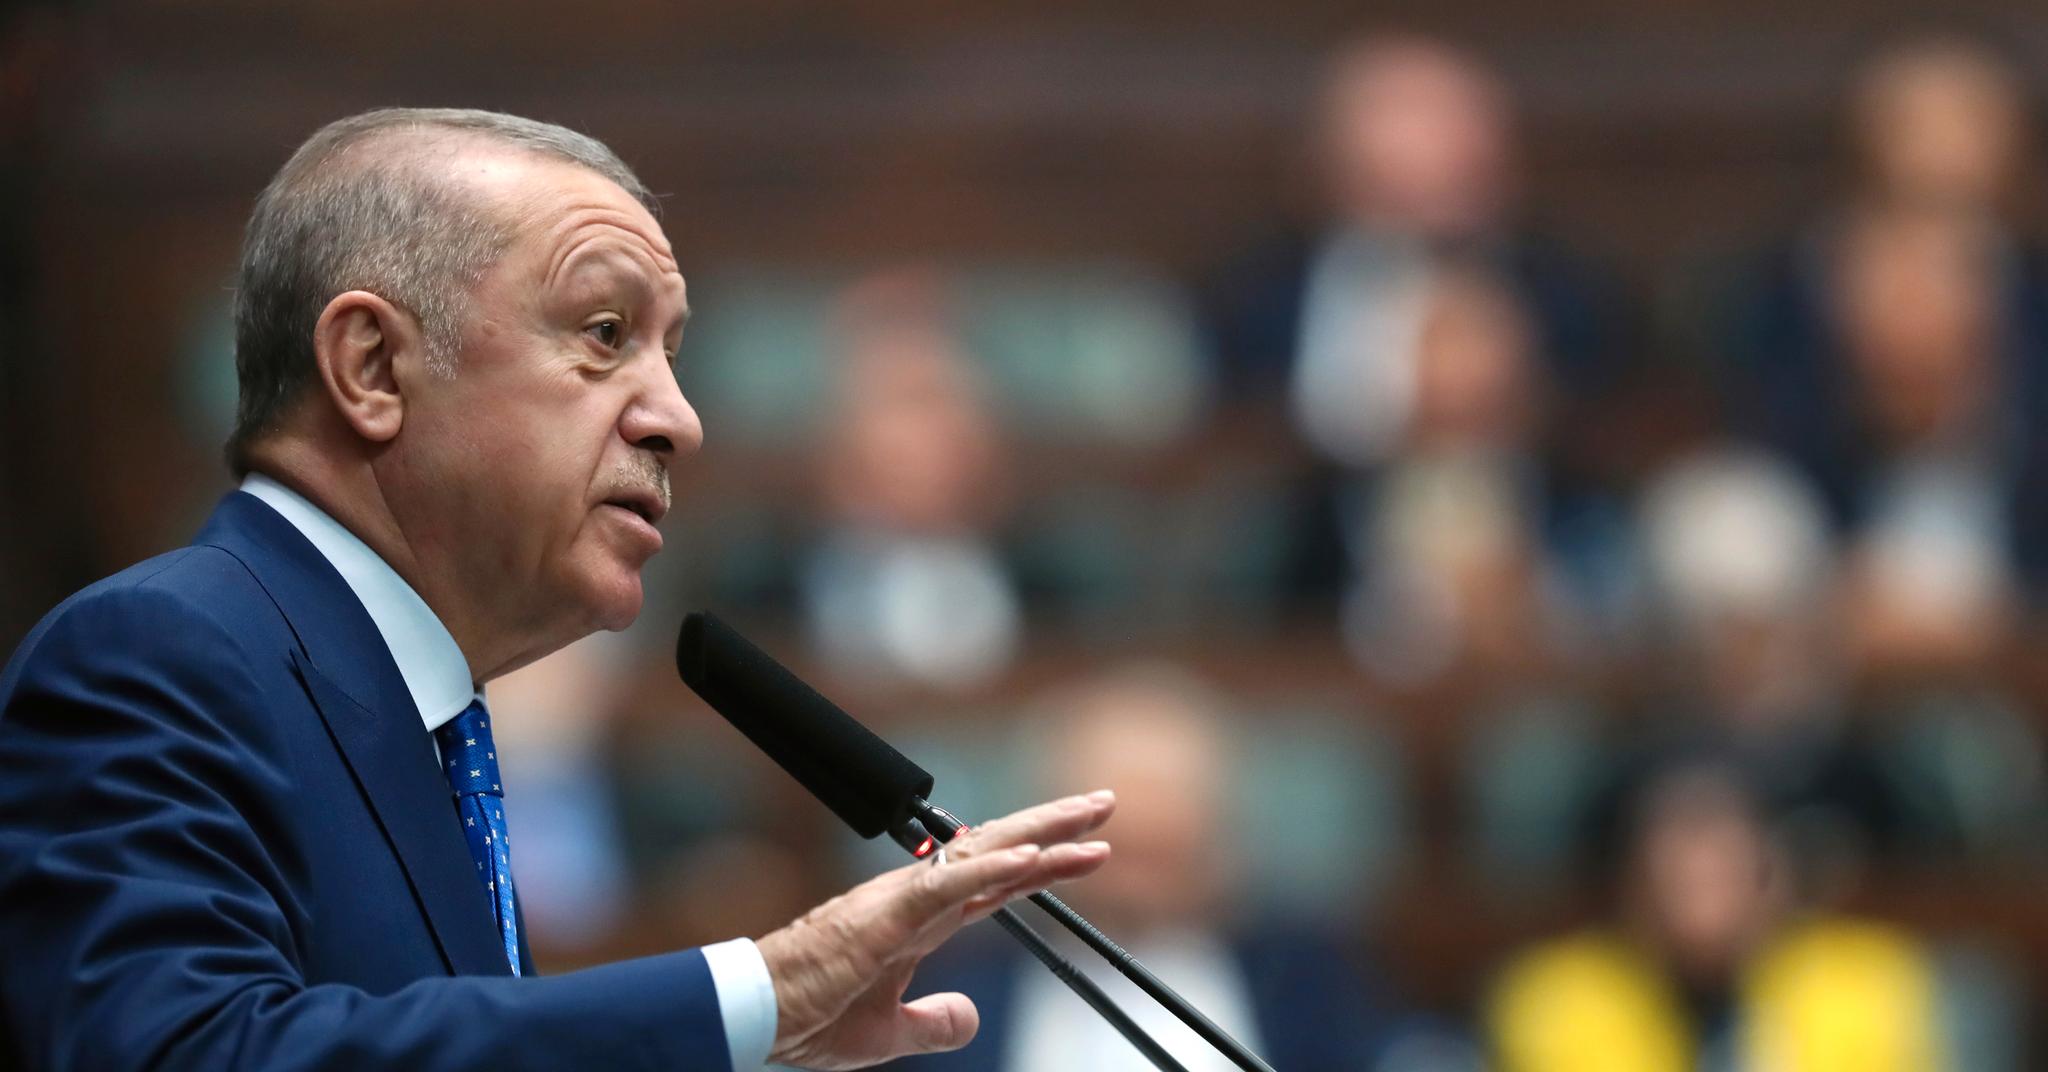 Tyrkias president Recep Tayyip Erdogan talte til det tyrkiske parlamentet onsdag 18. mai. Da gjorde han det klart at Tyrkia ikke vil godkjenne utvidelse av Nato på bekostning av landets sikkerhetsinteresser.